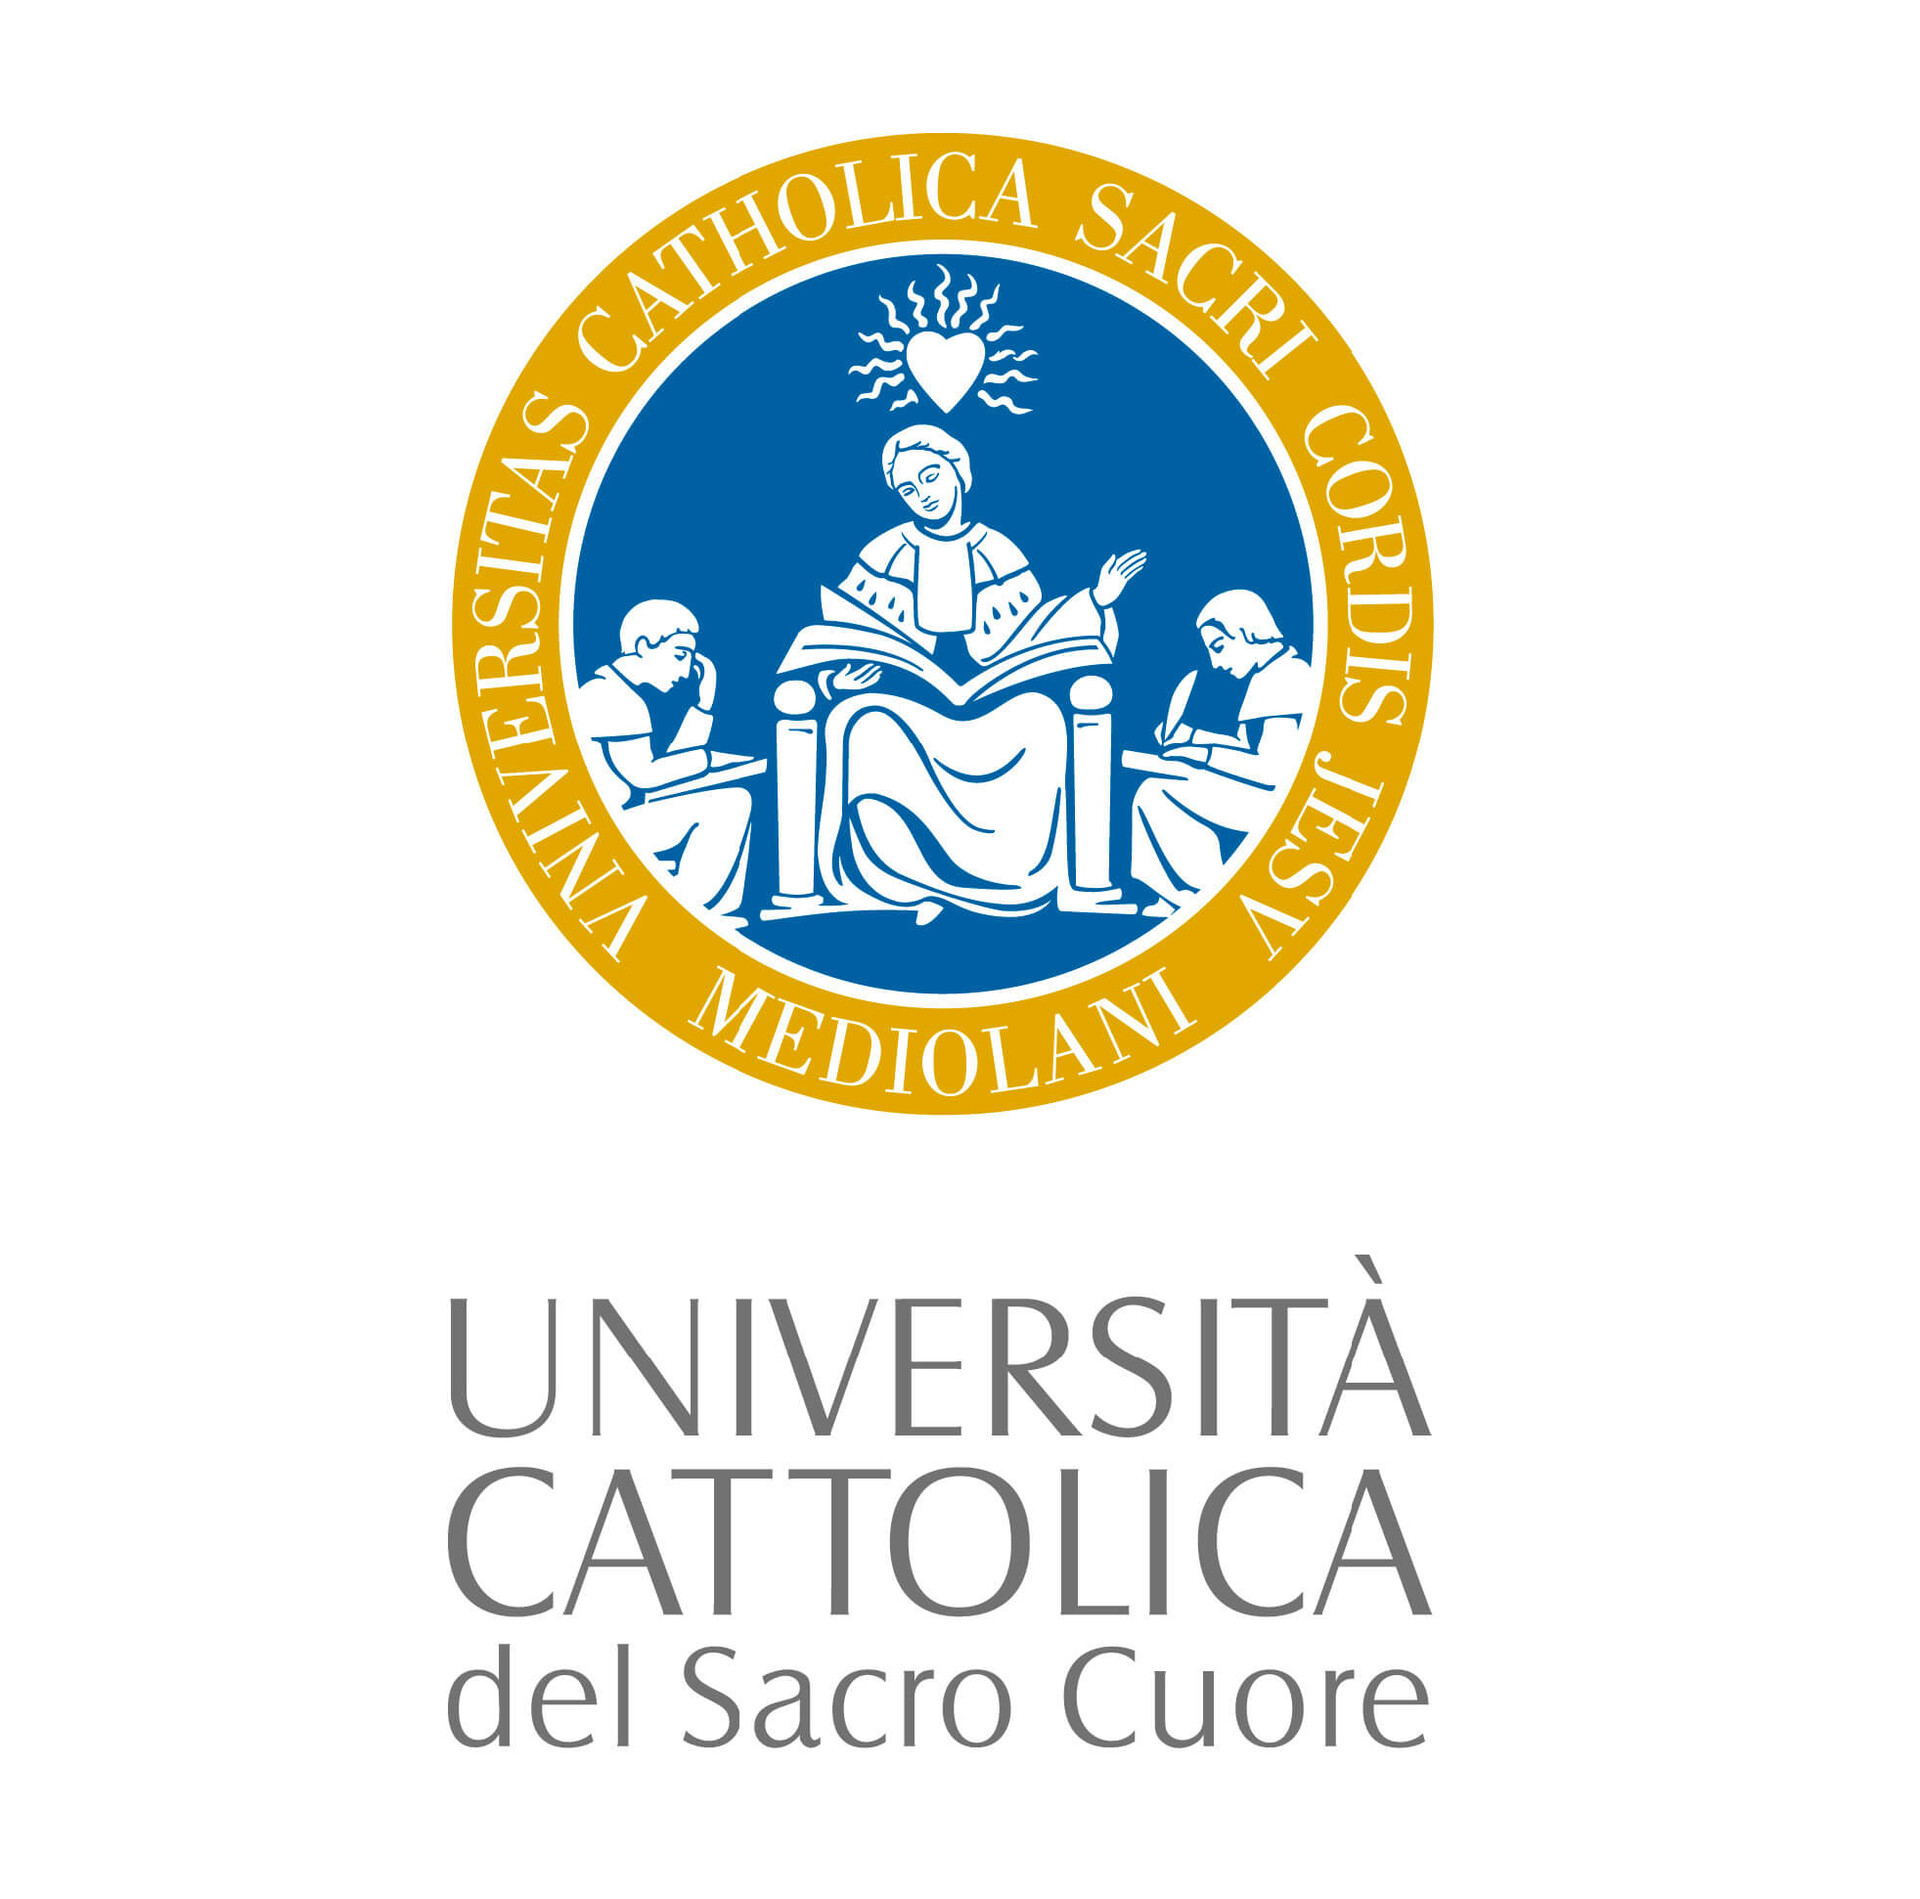 Universidad Católica del Sacro Cuore